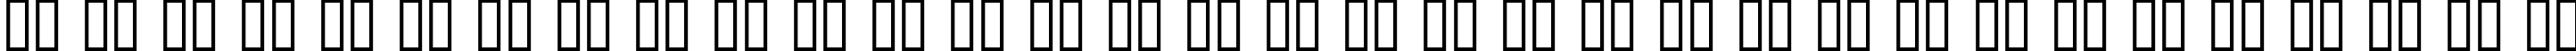 Пример написания русского алфавита шрифтом Kabel Bd Normal